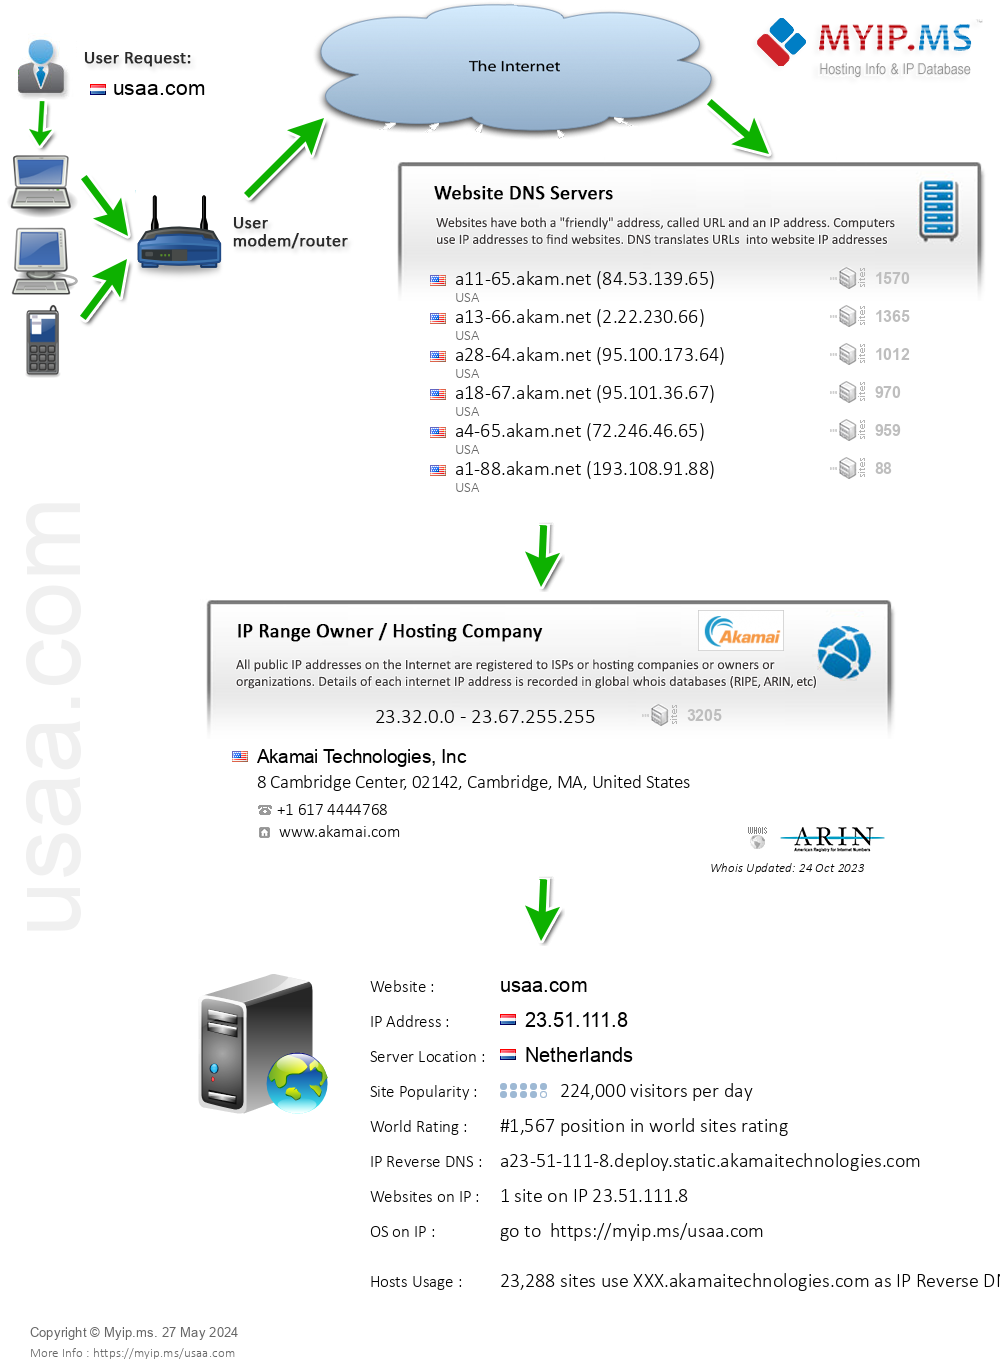 Usaa.com - Website Hosting Visual IP Diagram